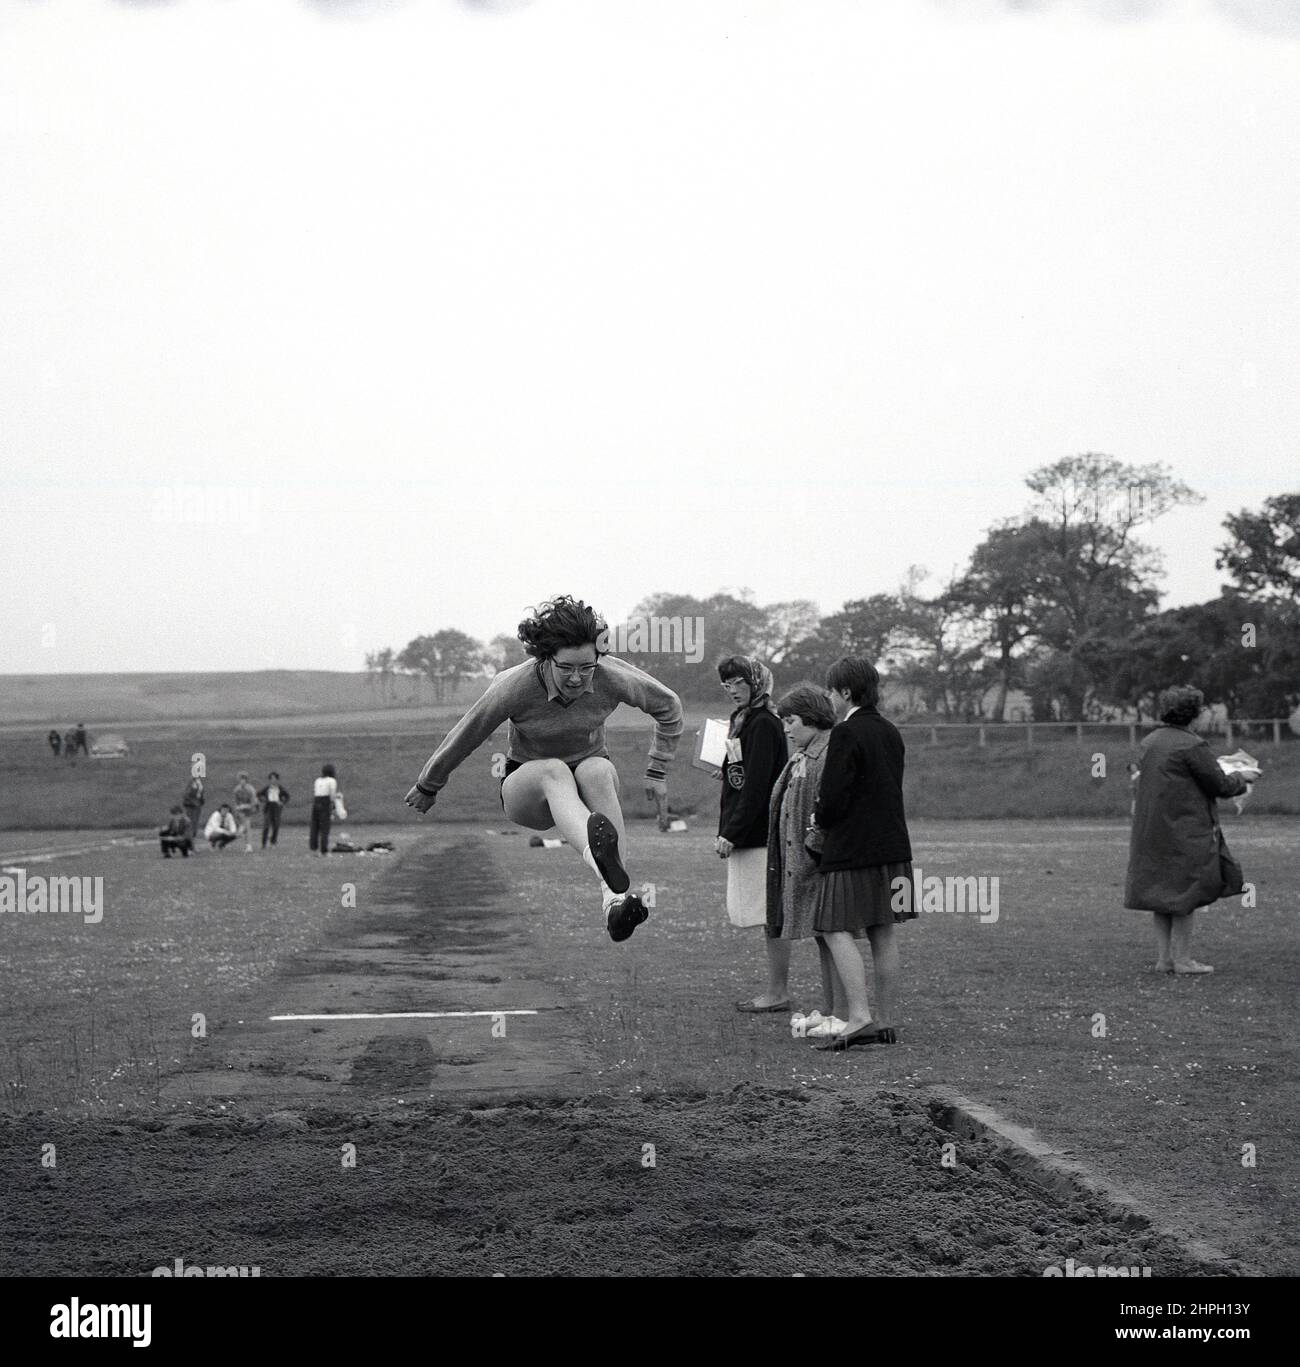 1960s, historique, une jeune athlète féminine à mi-parcours faisant le long saut, Fife, Écosse, Royaume-Uni. La vitesse, la force et l'agilité - et la détermination - sont toutes nécessaires dans ce grand événement sur piste et sur le terrain, où l'objectif est de sauter le plus loin possible dans un bac à sable à partir d'un point de décollage sur le run-up. Un événement pour hommes dans les Jeux Olympiques modernes de 1896, les femmes ont pris part pour la première fois au long saut olympique en 1948 à Londres. Banque D'Images